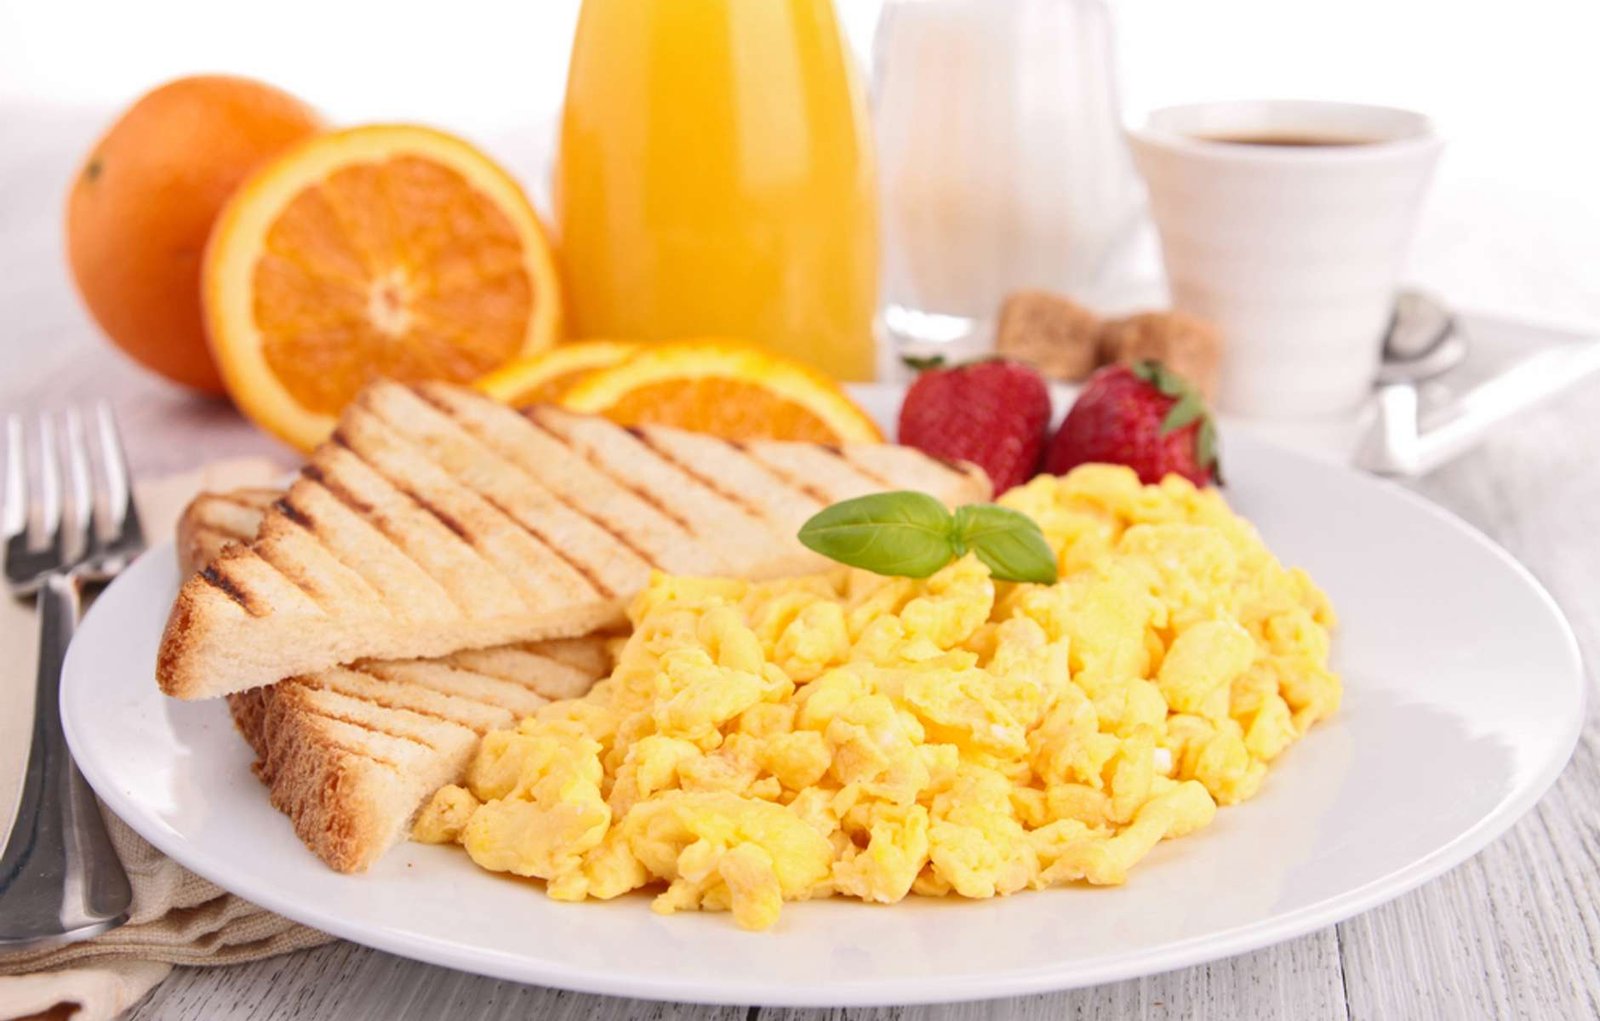 Hoe ziet een gezond ontbijt eruit?